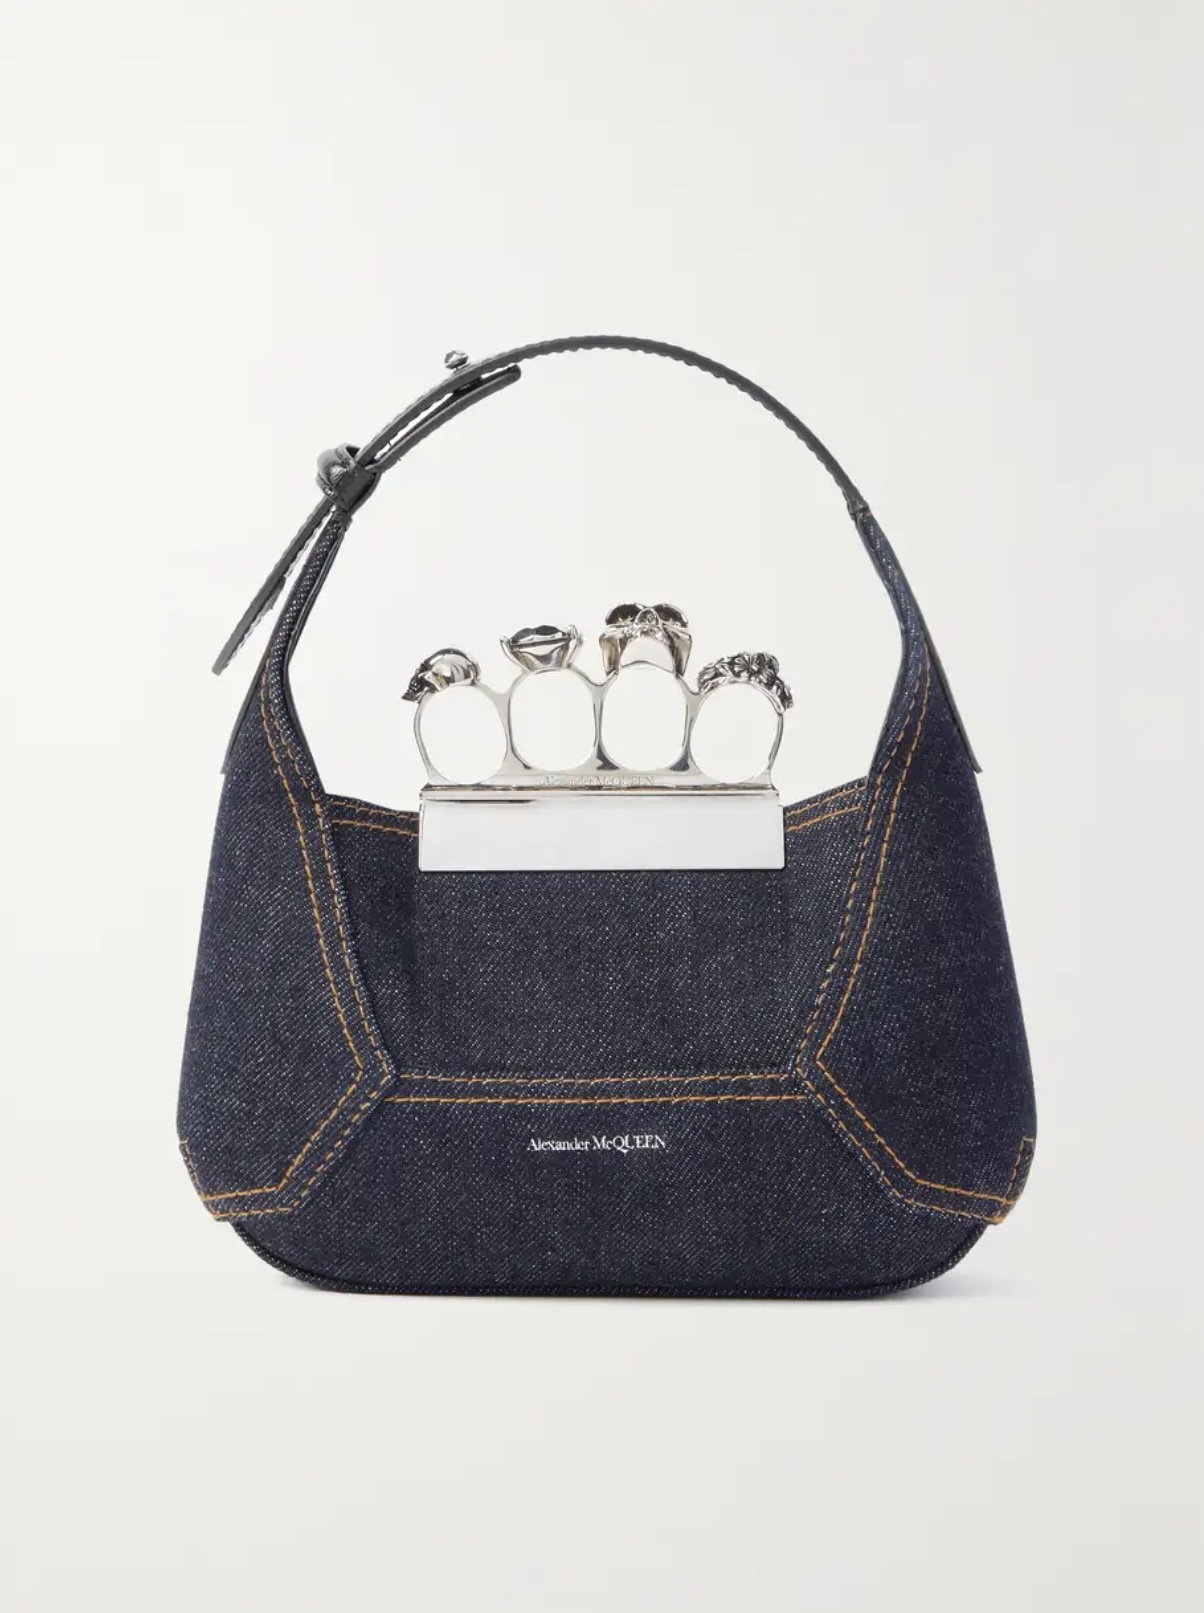 Oh baby, baby: стильные мини-сумки, которые достойны вашего гардероба